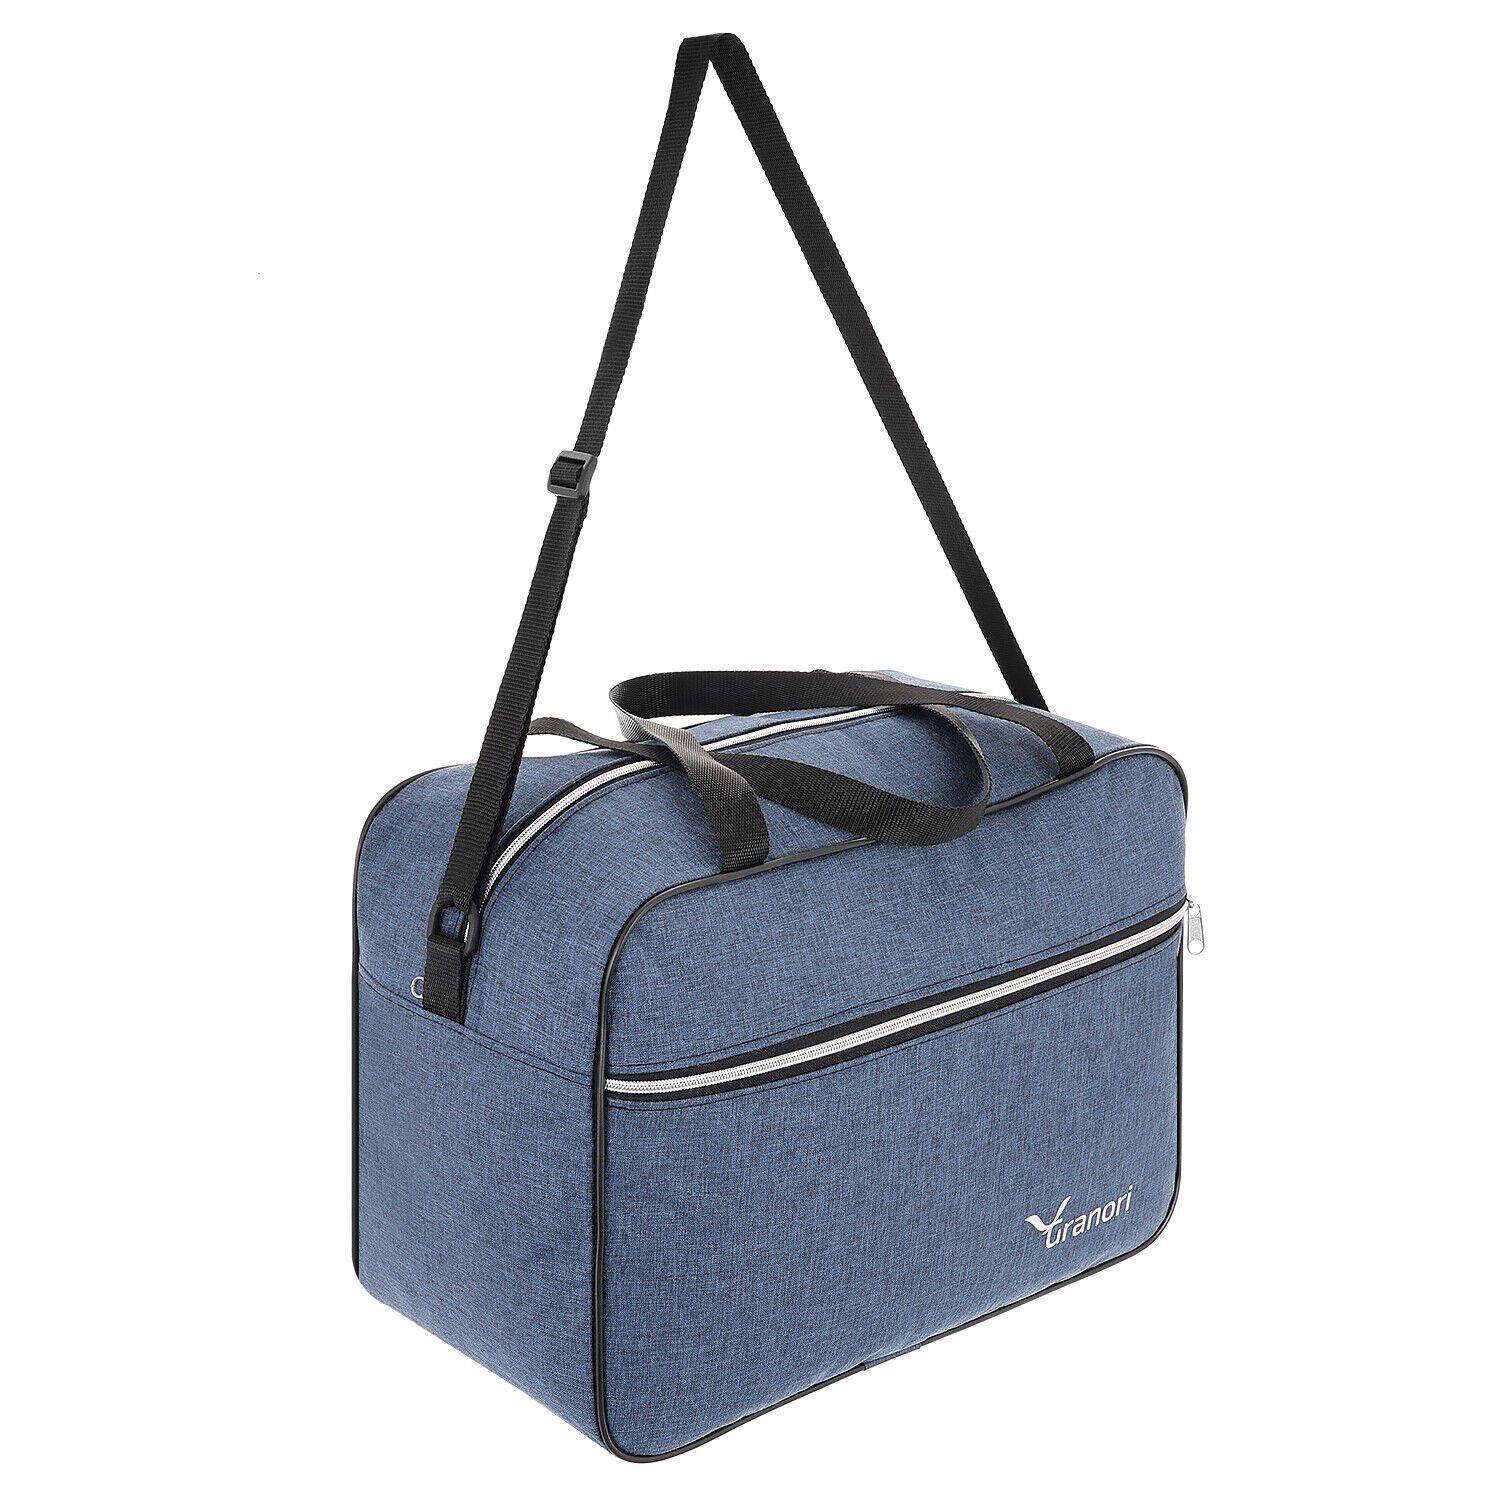 Granori Reisetasche 40x30x20 cm leichtes Flugzeug Handgepäck 24 l mit Aufsteckfunktion, platzsparend, mit geräumigem Hauptfach und verstellbarem Schultergurt Blau